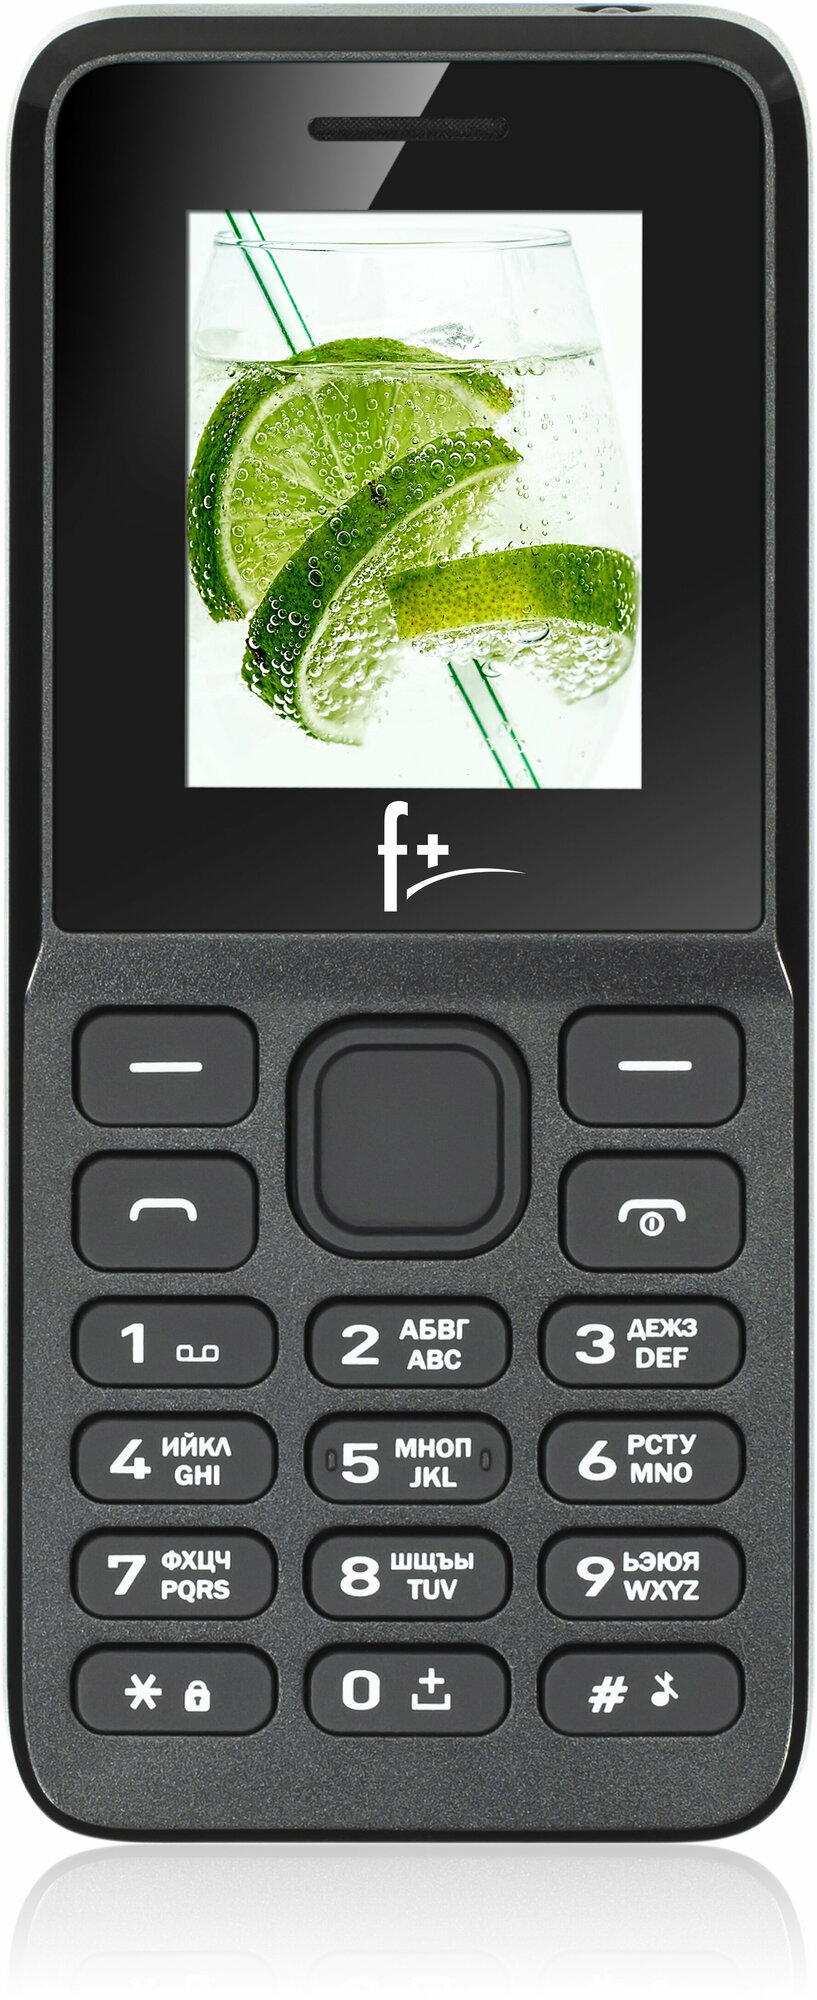 Телефон F+ B170, 2 SIM, черный